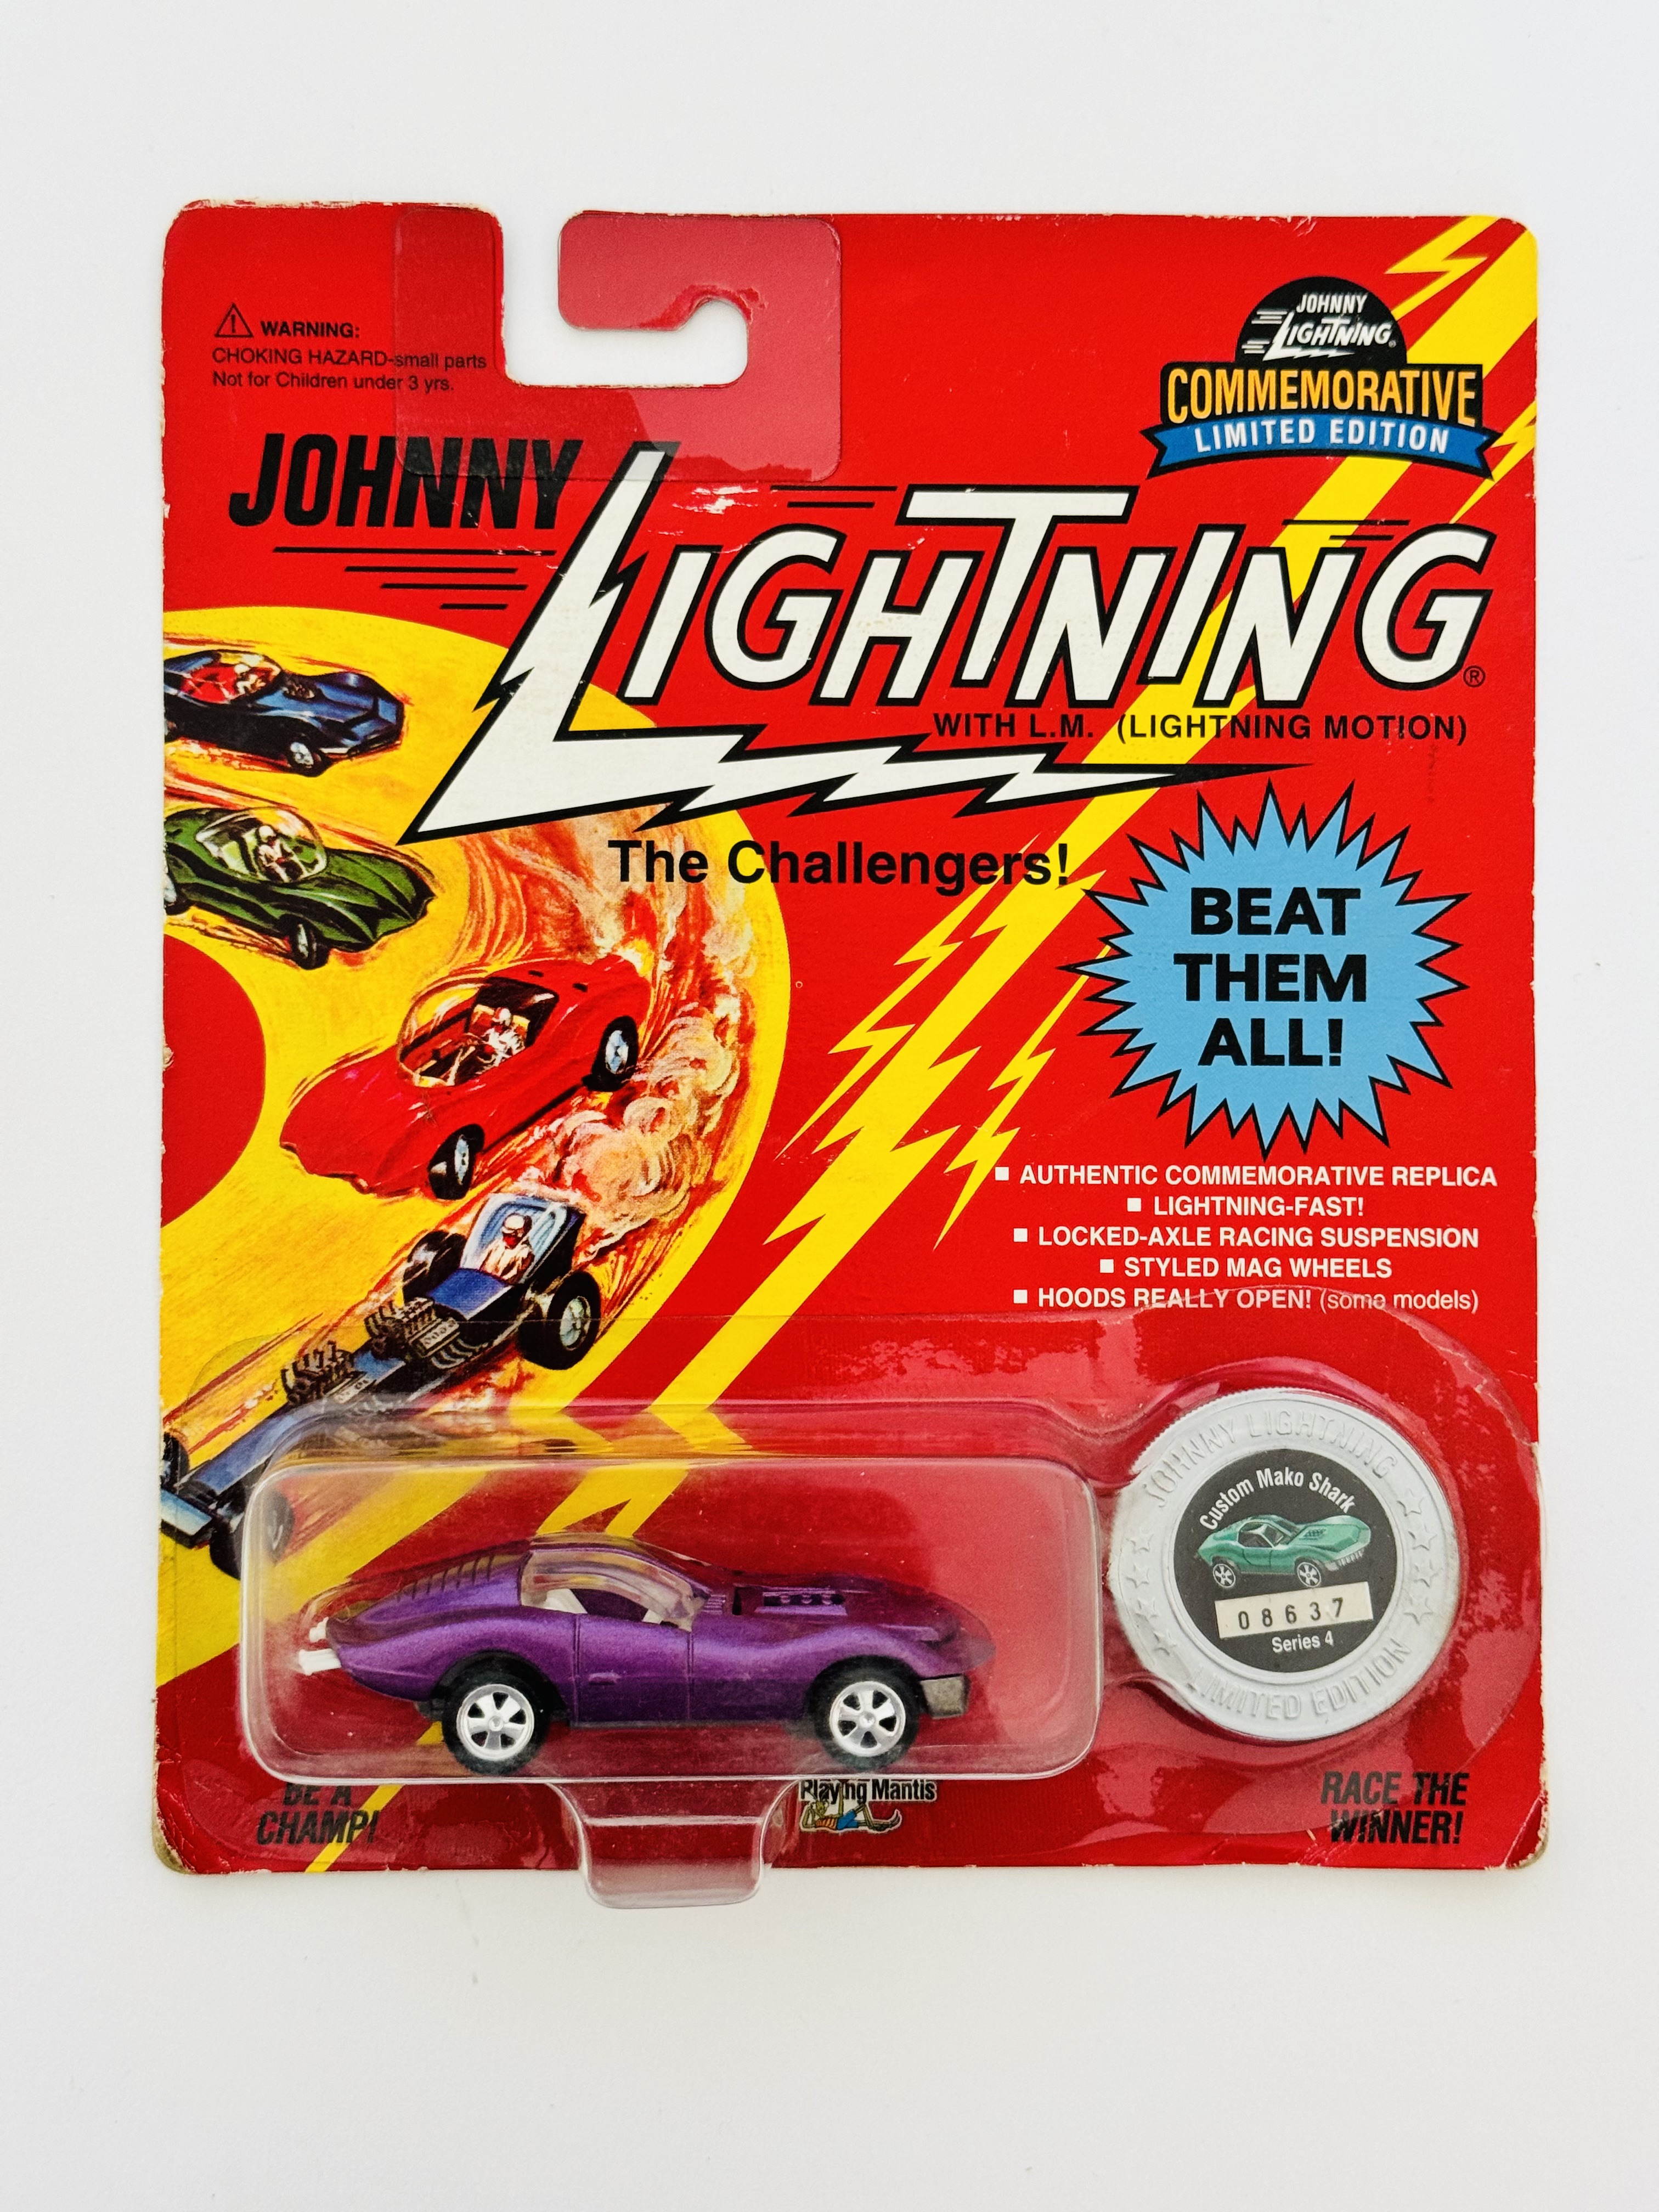 Johnny Lightning Commemorative Edition Custom Mako Shark